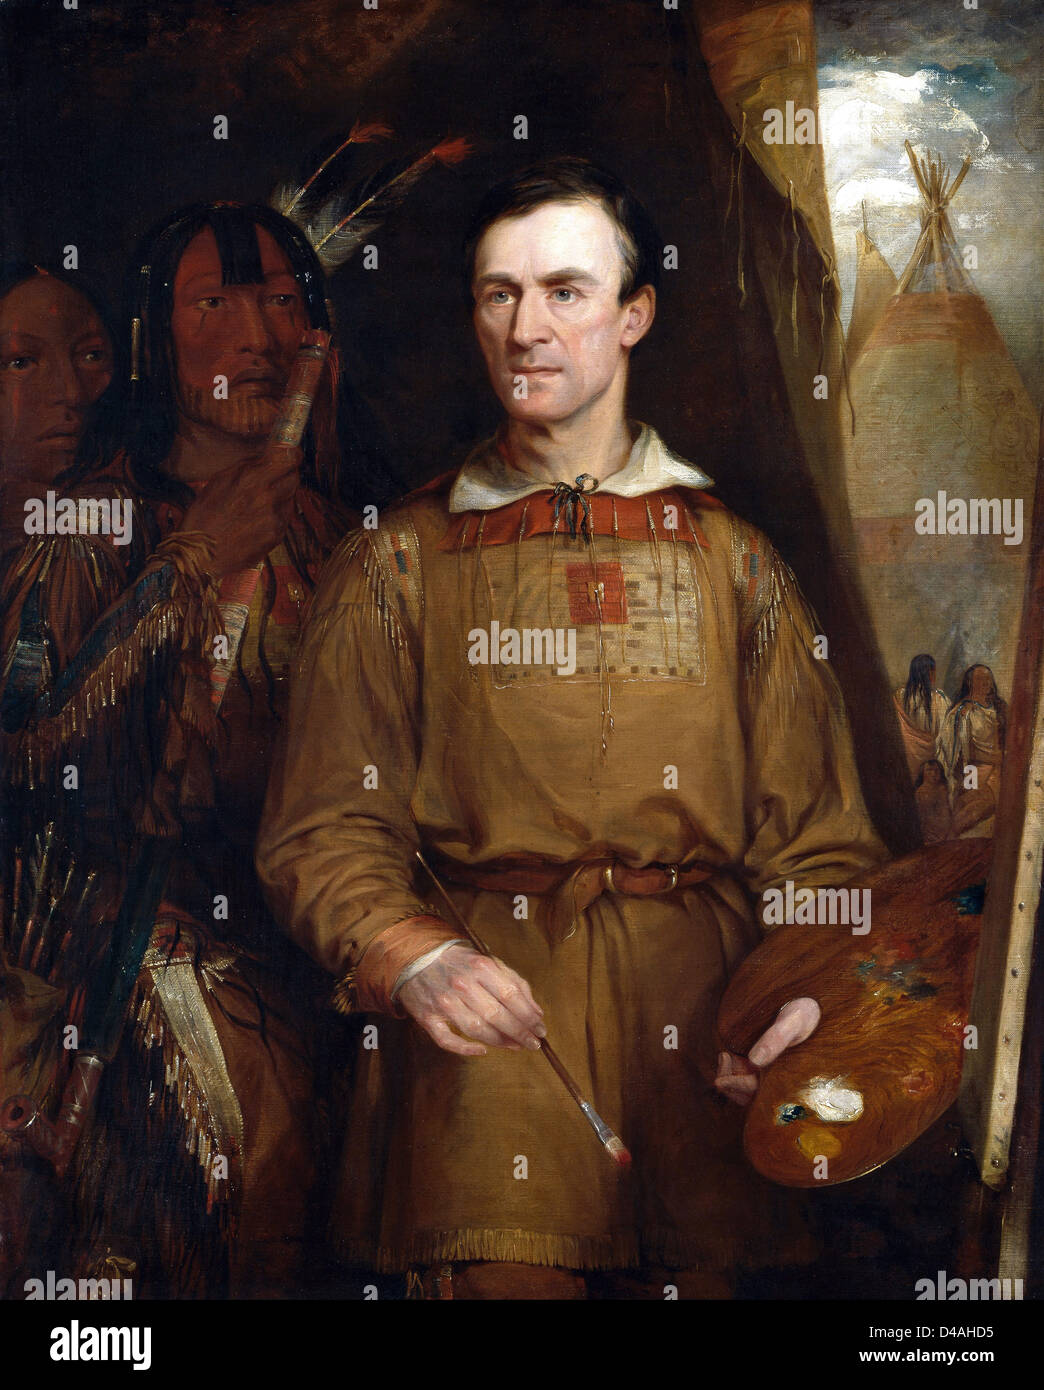 George Catlin, US-amerikanischer Maler, Autor und Reisender, auf Portraits von Indianern in den alten Westen spezialisiert. Stockfoto